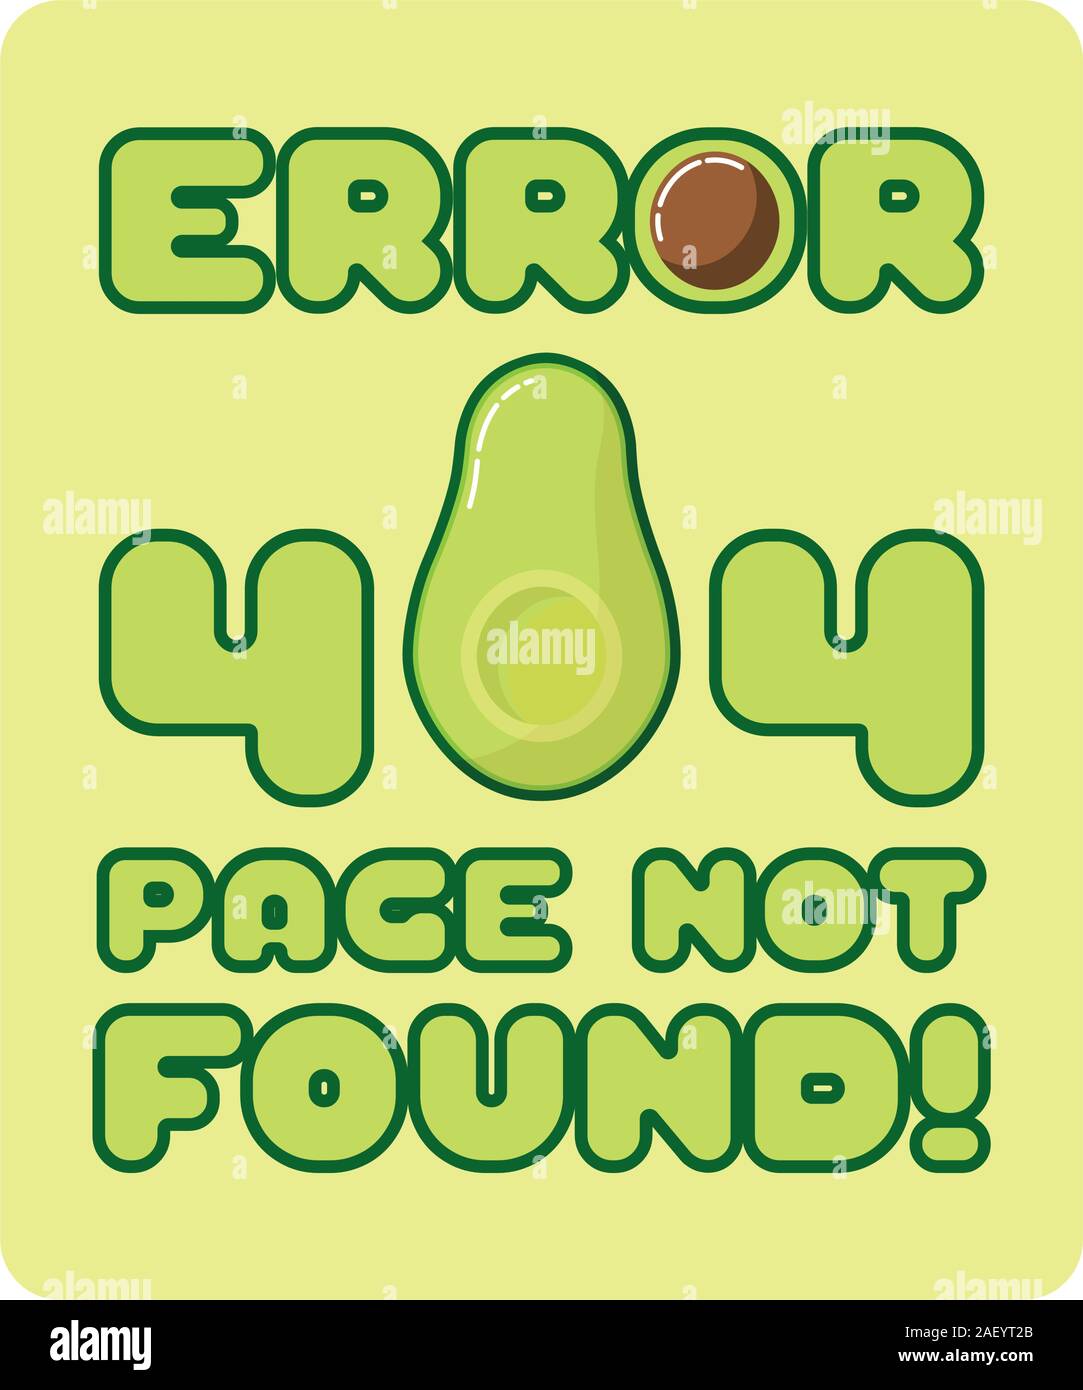 Errore 404, pagina non trovata tema Avocado Illustrazione Vettoriale